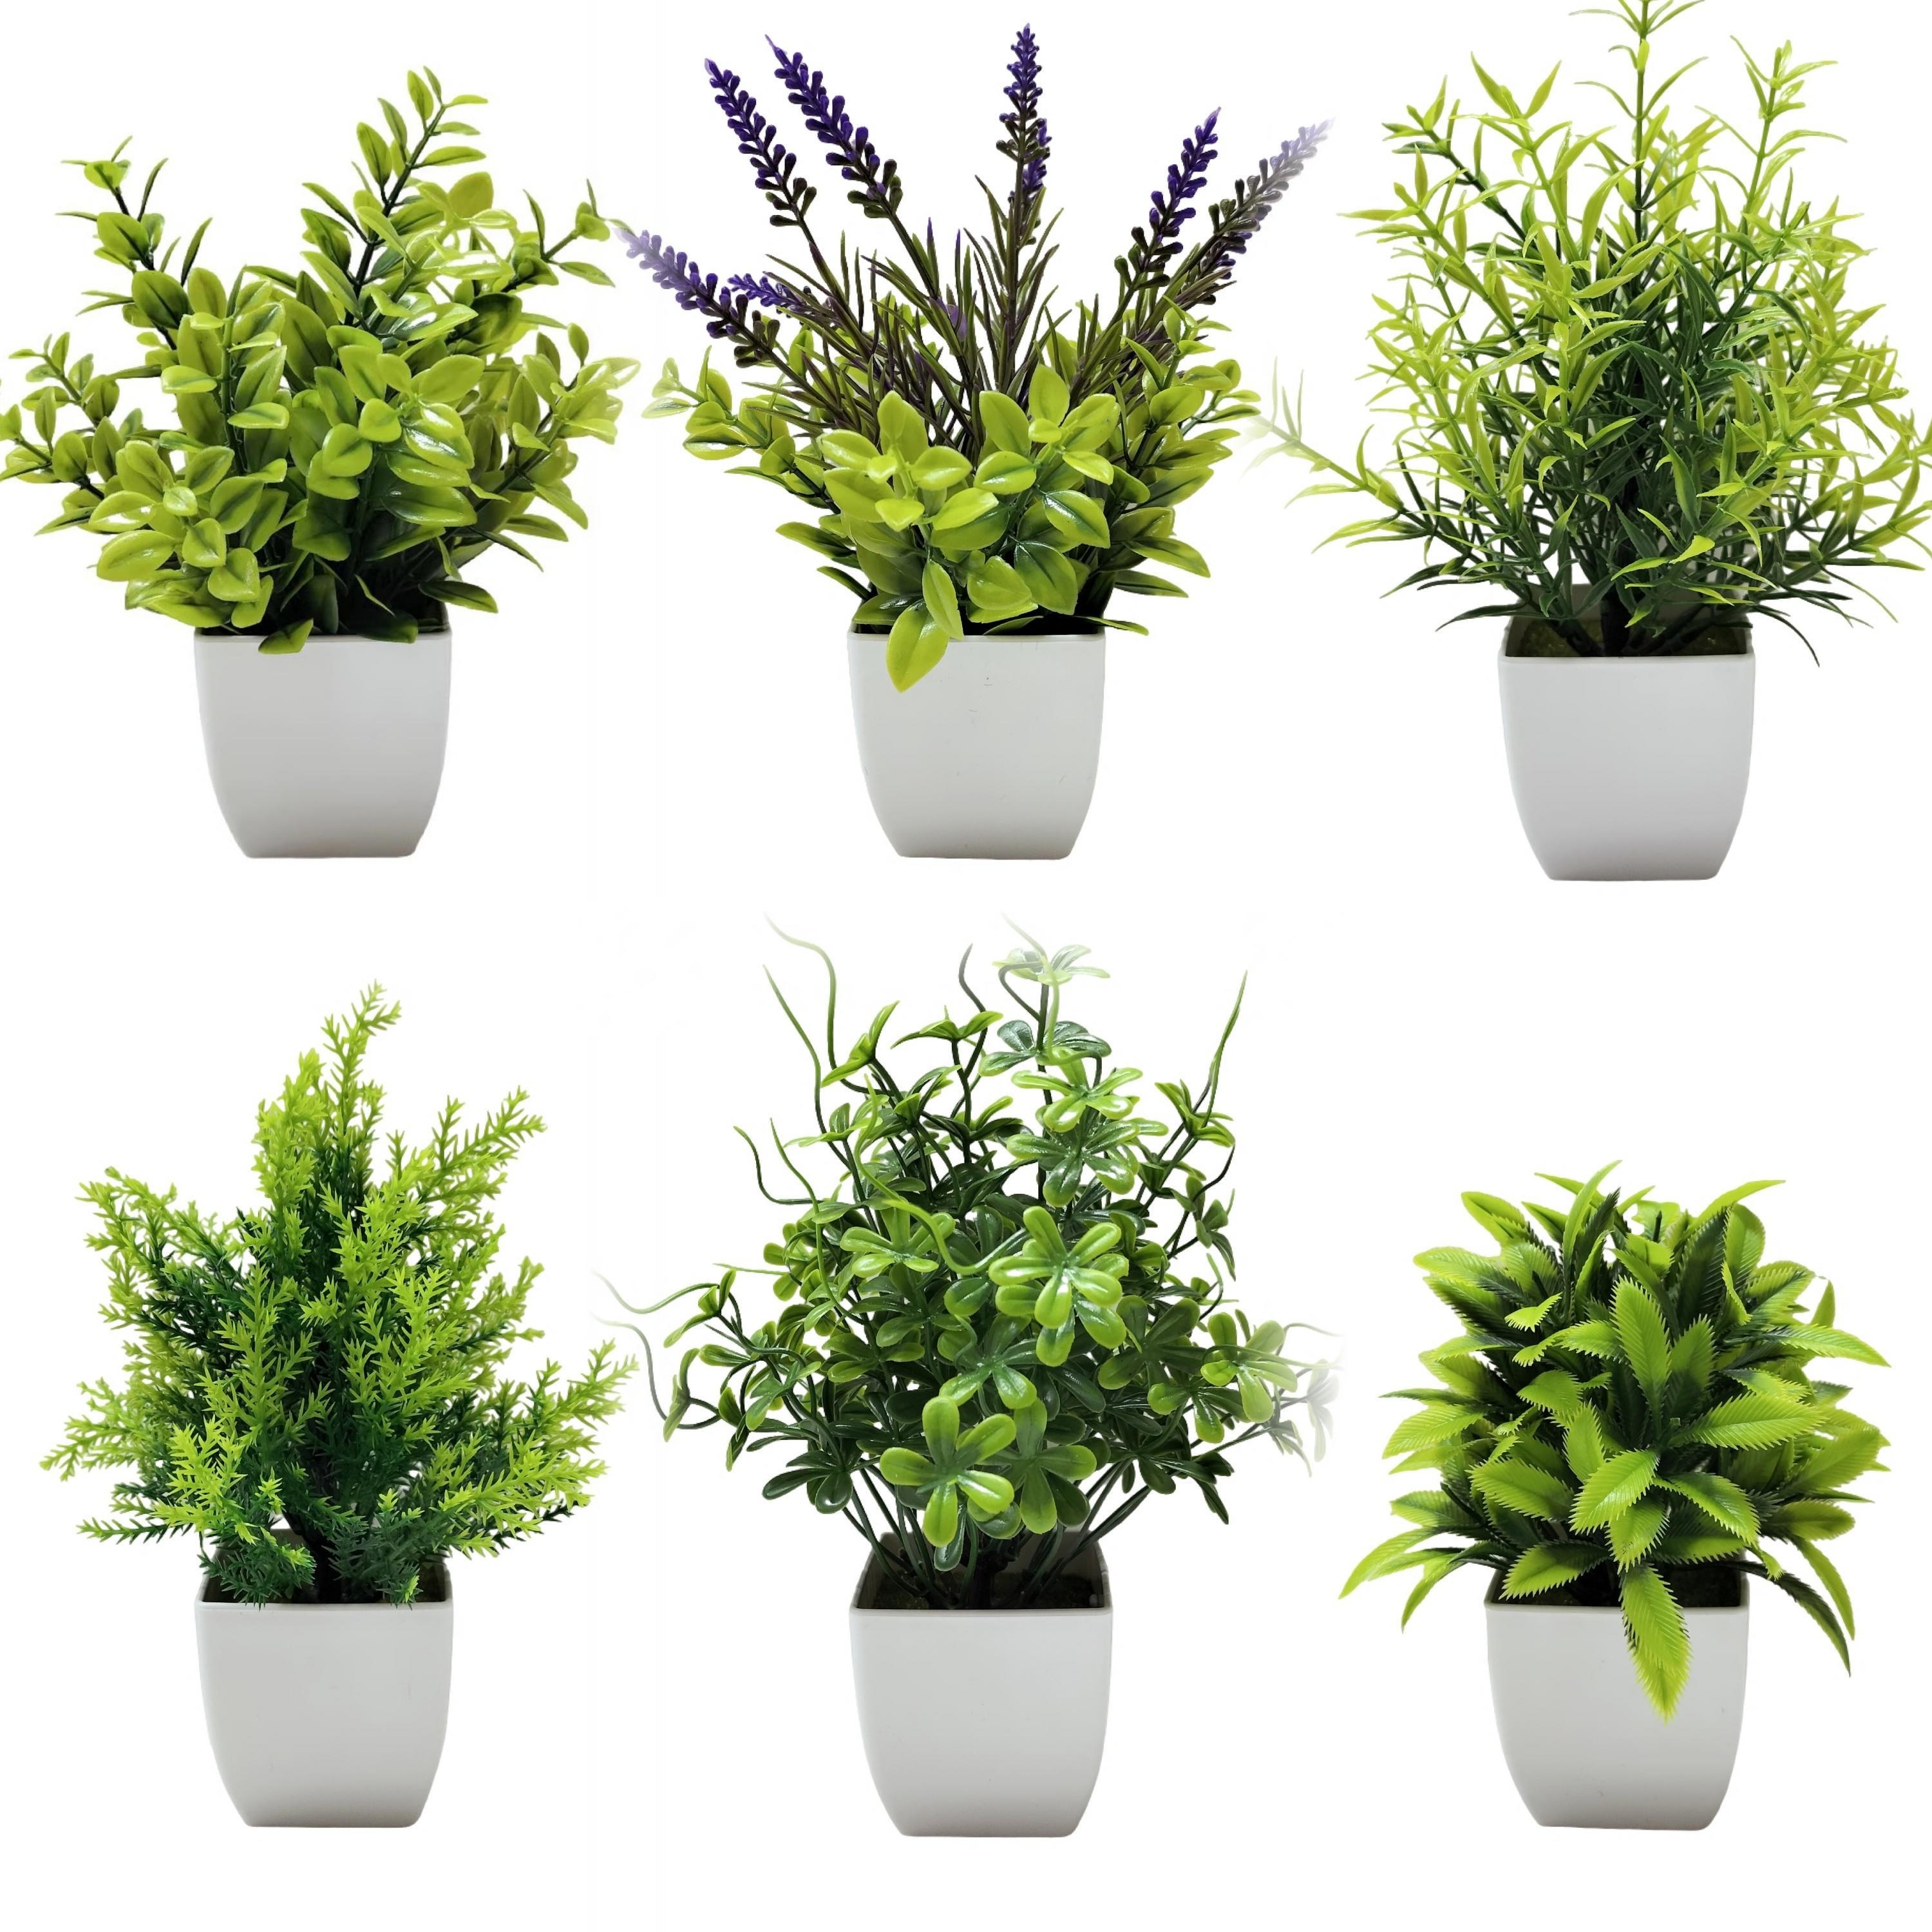 Plantas artificiales de interior en macetas, plantas artificiales al aire  libre, mini plantas suculentas verdes en cerámica negra estética para baño